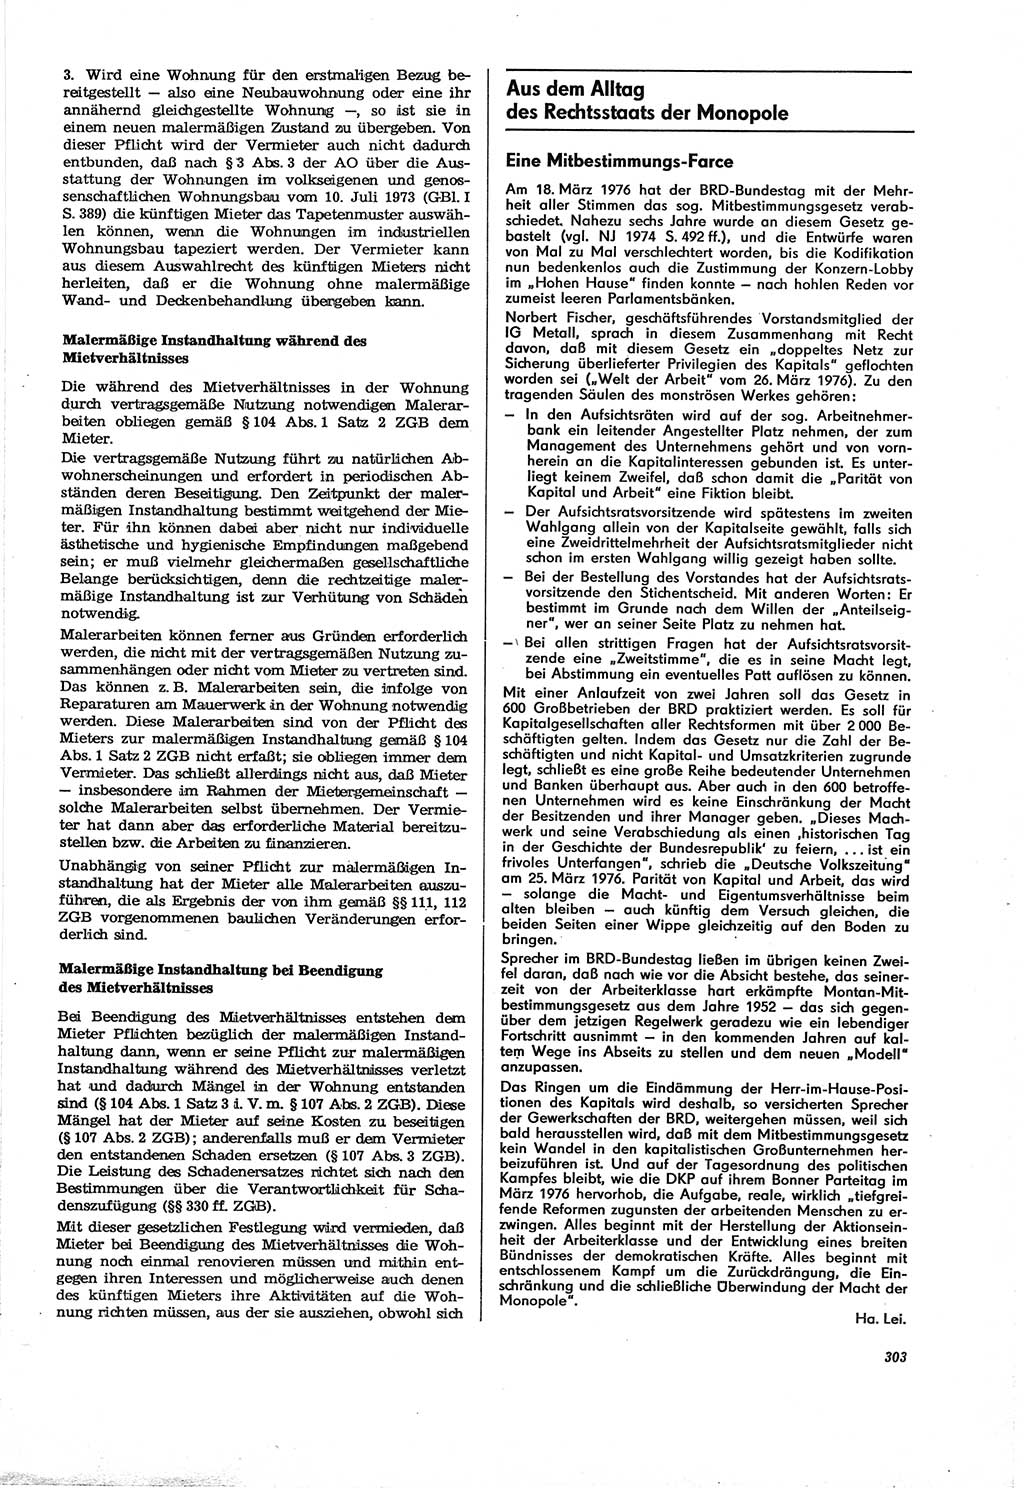 Neue Justiz (NJ), Zeitschrift für Recht und Rechtswissenschaft [Deutsche Demokratische Republik (DDR)], 30. Jahrgang 1976, Seite 303 (NJ DDR 1976, S. 303)